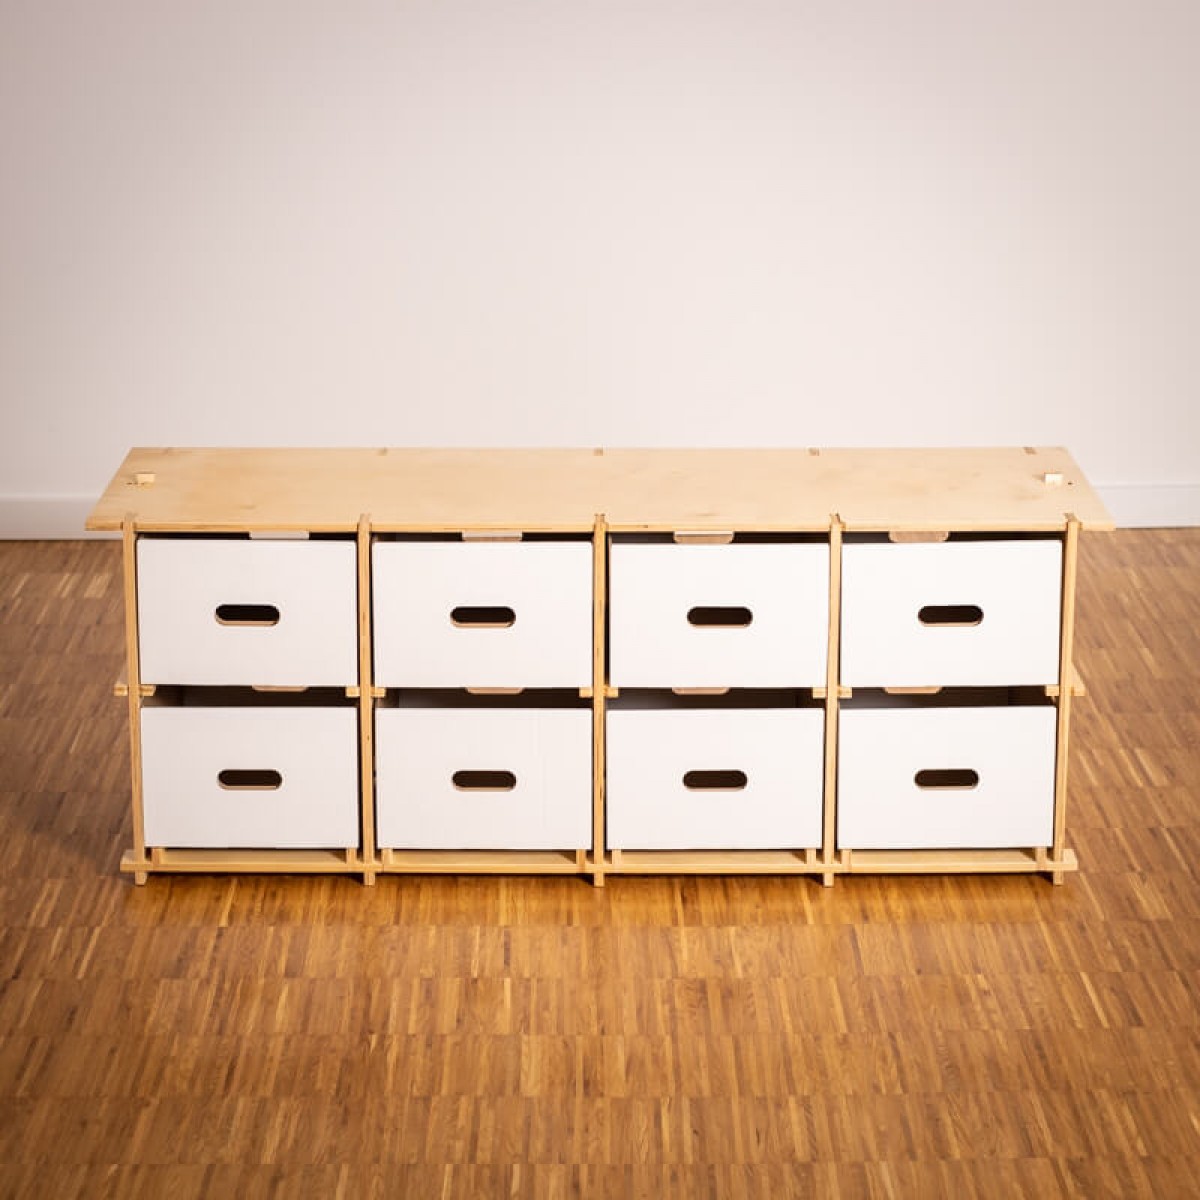 16boxes - Fourbytwo (4x2) - Sitzbank